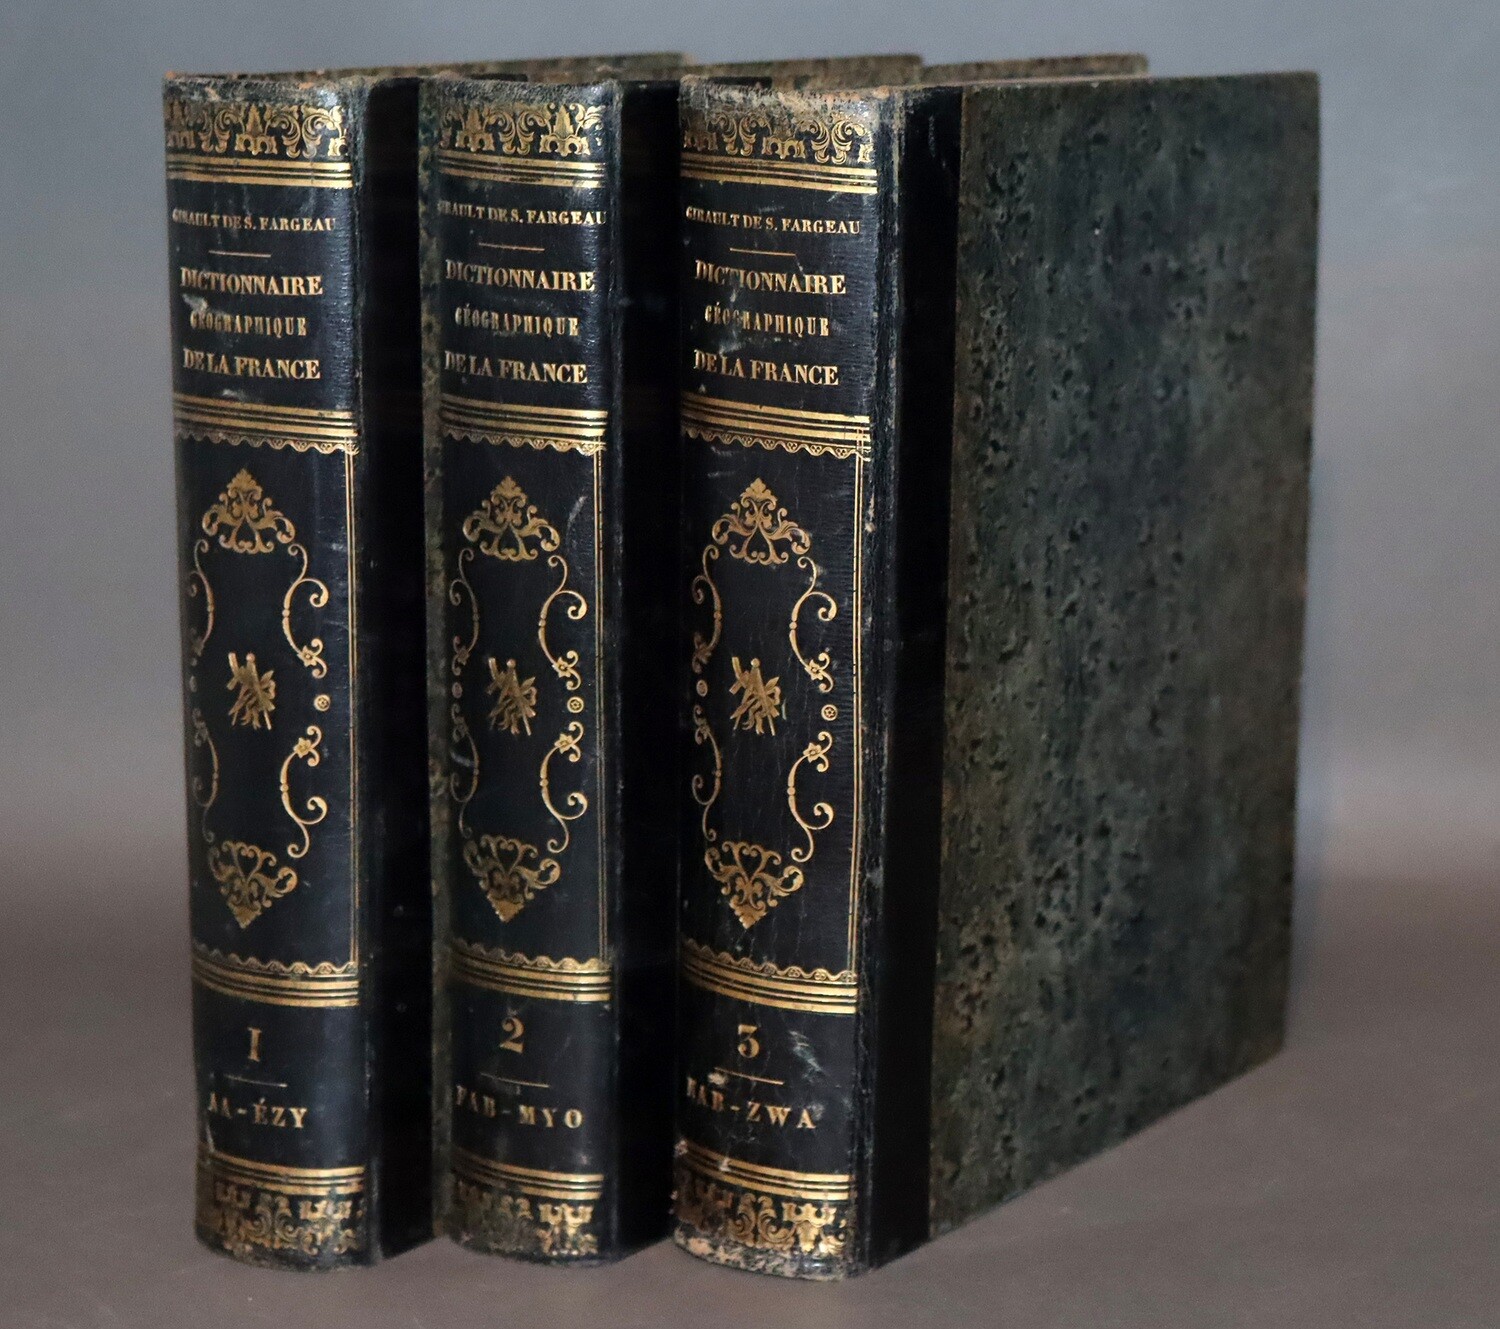 GIRAULT de SAINT-FARGEAU.- Dictionnaire géographique...- 1844-1846.- 3 volumes in-4 en reliure maçonnique de l'époque.